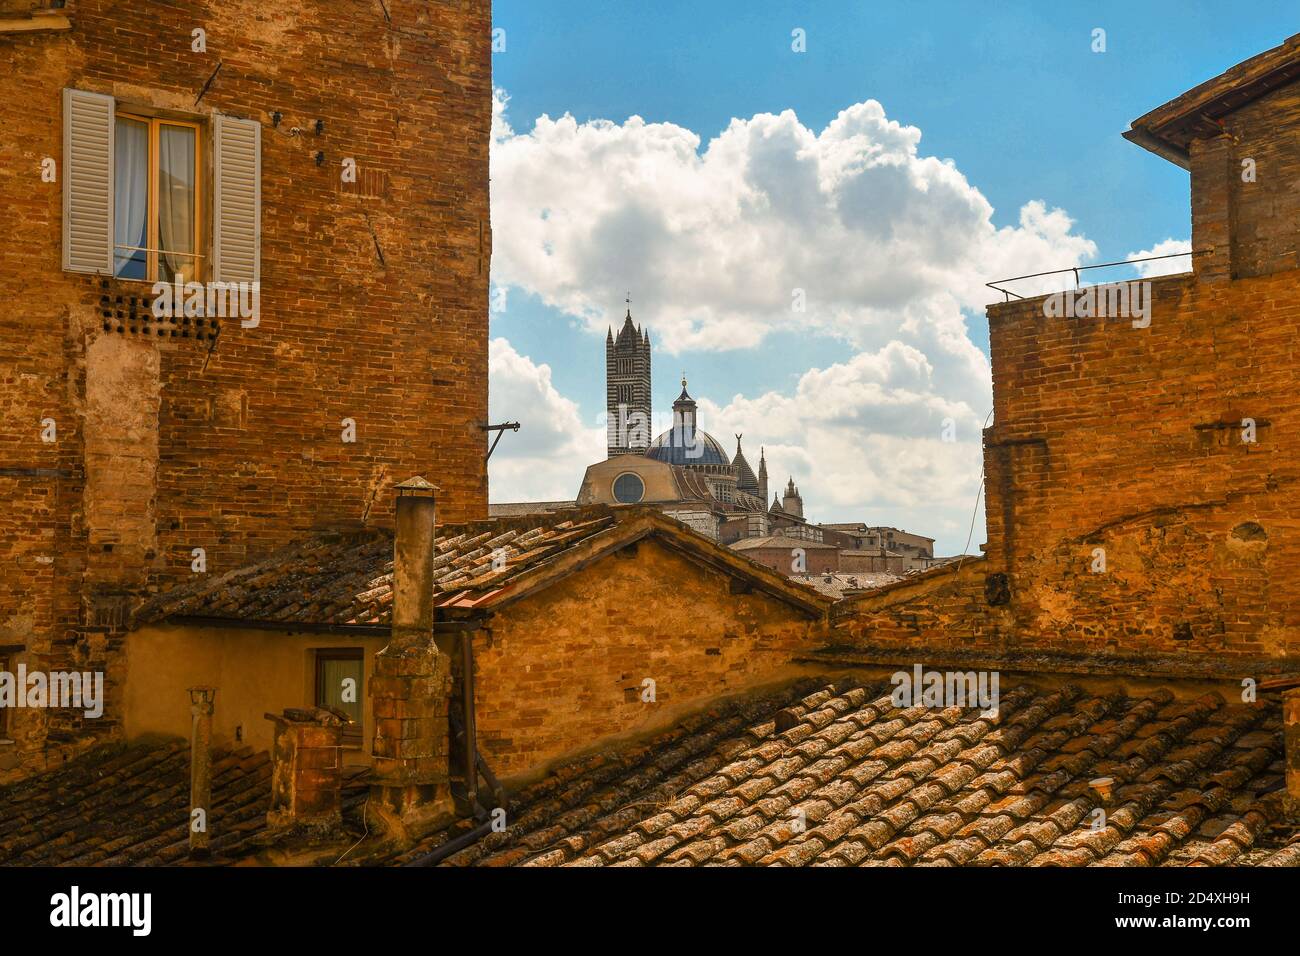 Vue sur les toits du centre historique de Sienne, site classé au patrimoine mondial de l'UNESCO, avec le haut de la cathédrale en arrière-plan, Toscane, Italie Banque D'Images